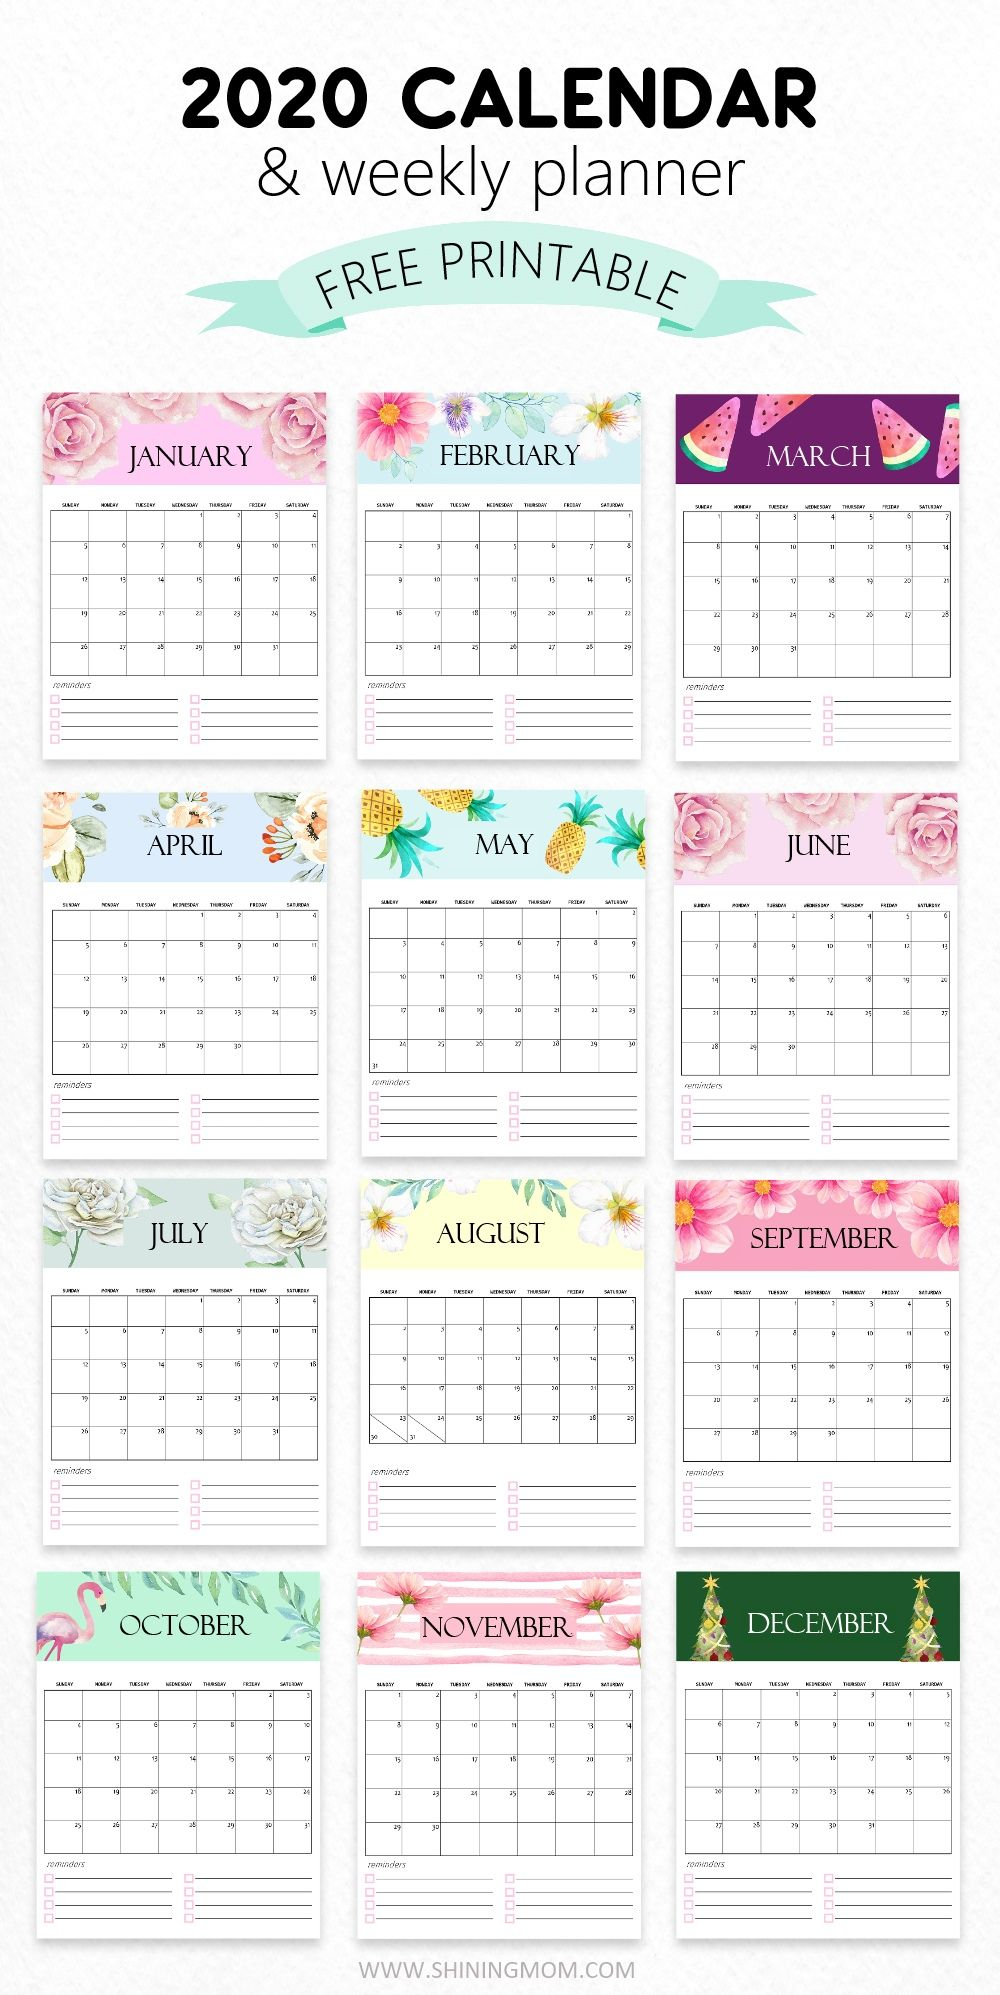 Calendar 2020 Pinterest | Calendar Ideas Design Creative inside December Calendar 2020 Pinterest